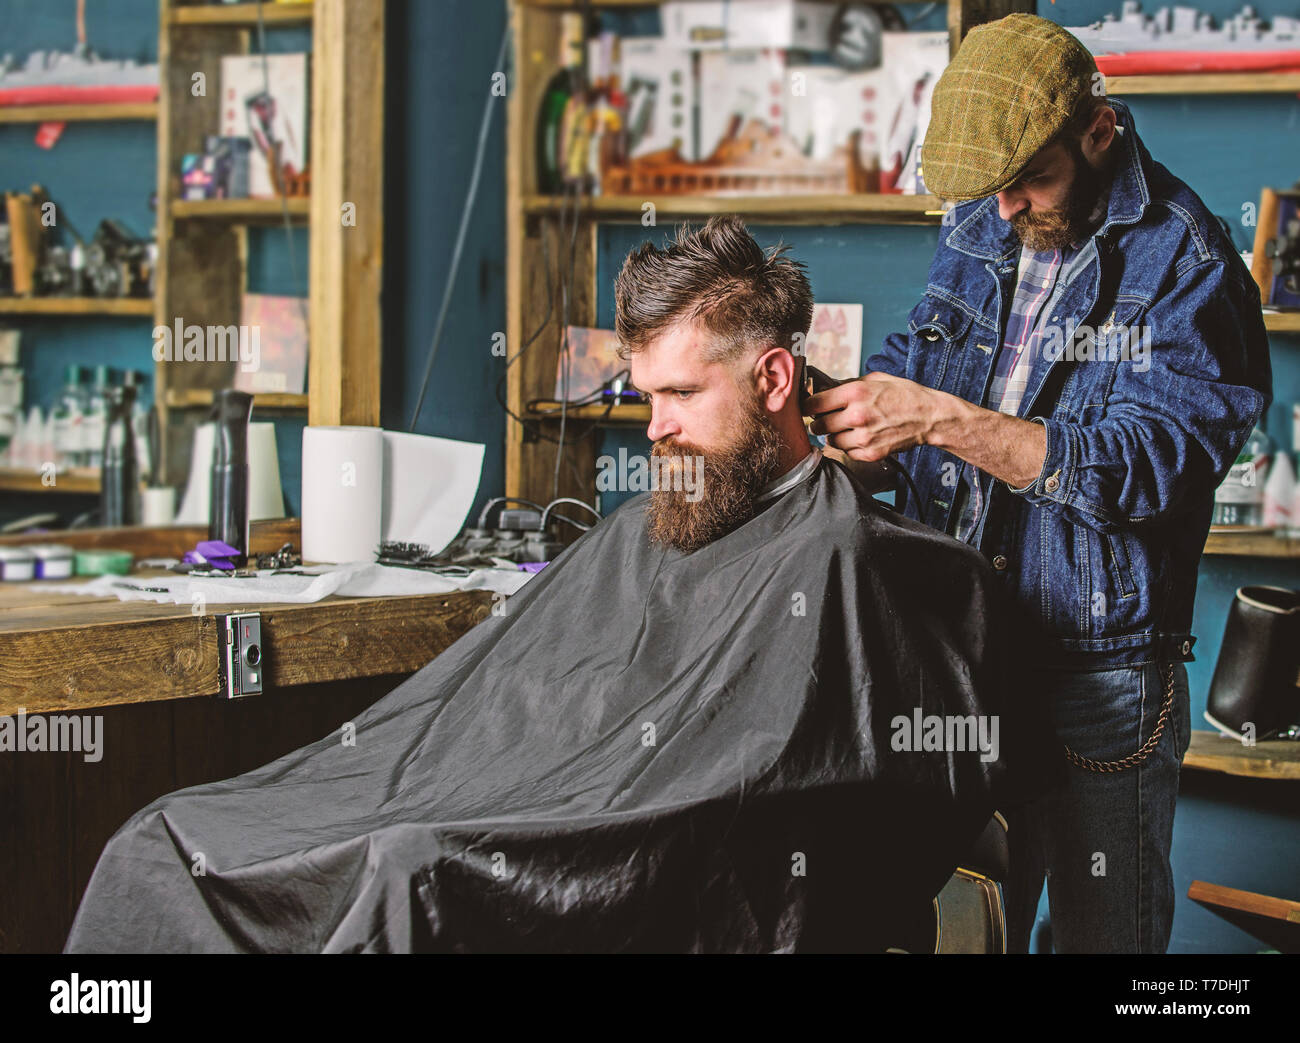 Salon de coiffure avec cheveux clipper fonctionne sur décote de barbu, rétro  arrière-plan barbershop. Hipster hairstyle concept. Hipster client coupe.  Salon de coiffure avec cheveux coupe tondeuse sur la nuque du client